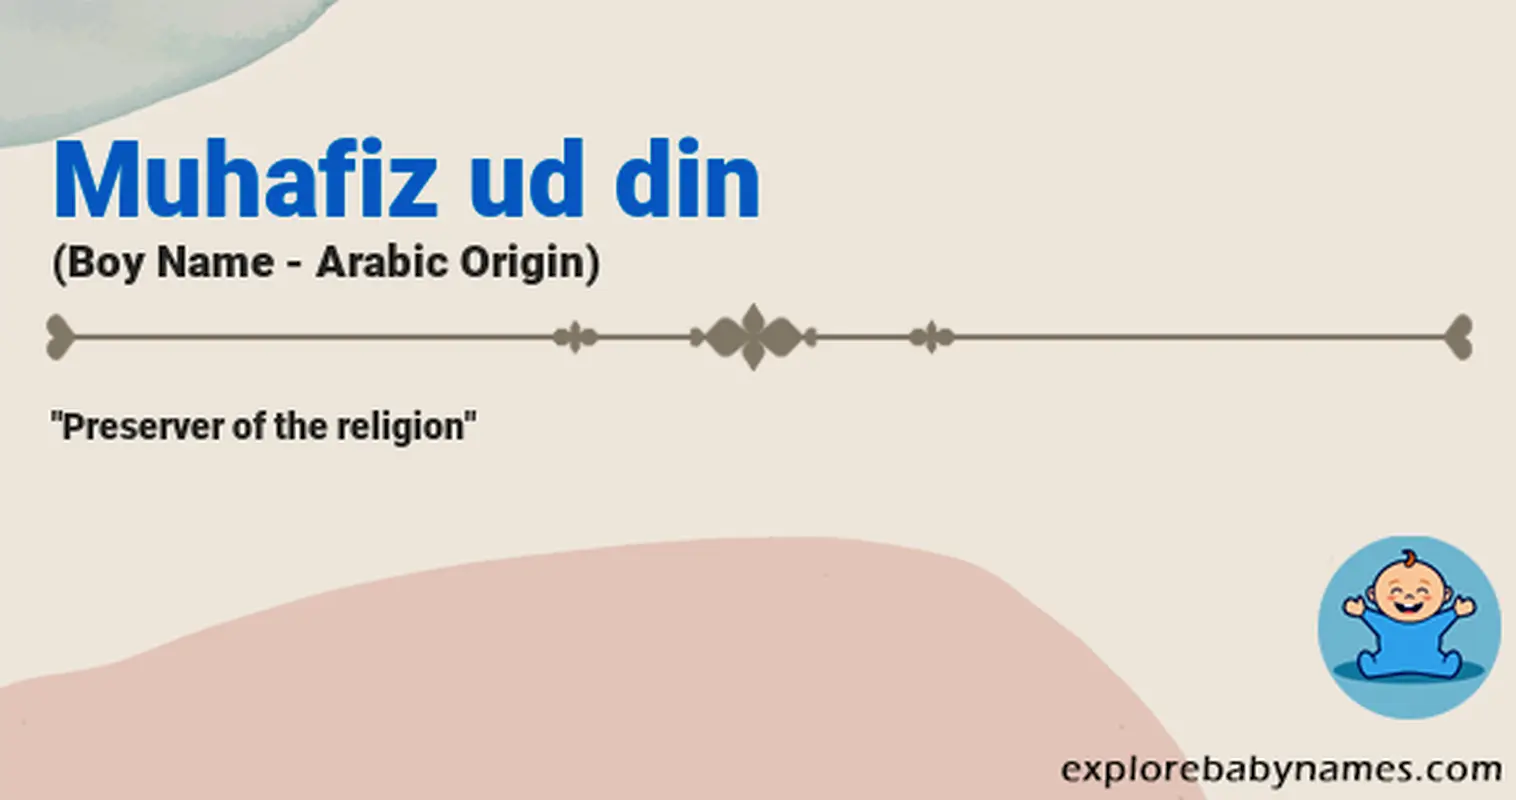 Meaning of Muhafiz ud din